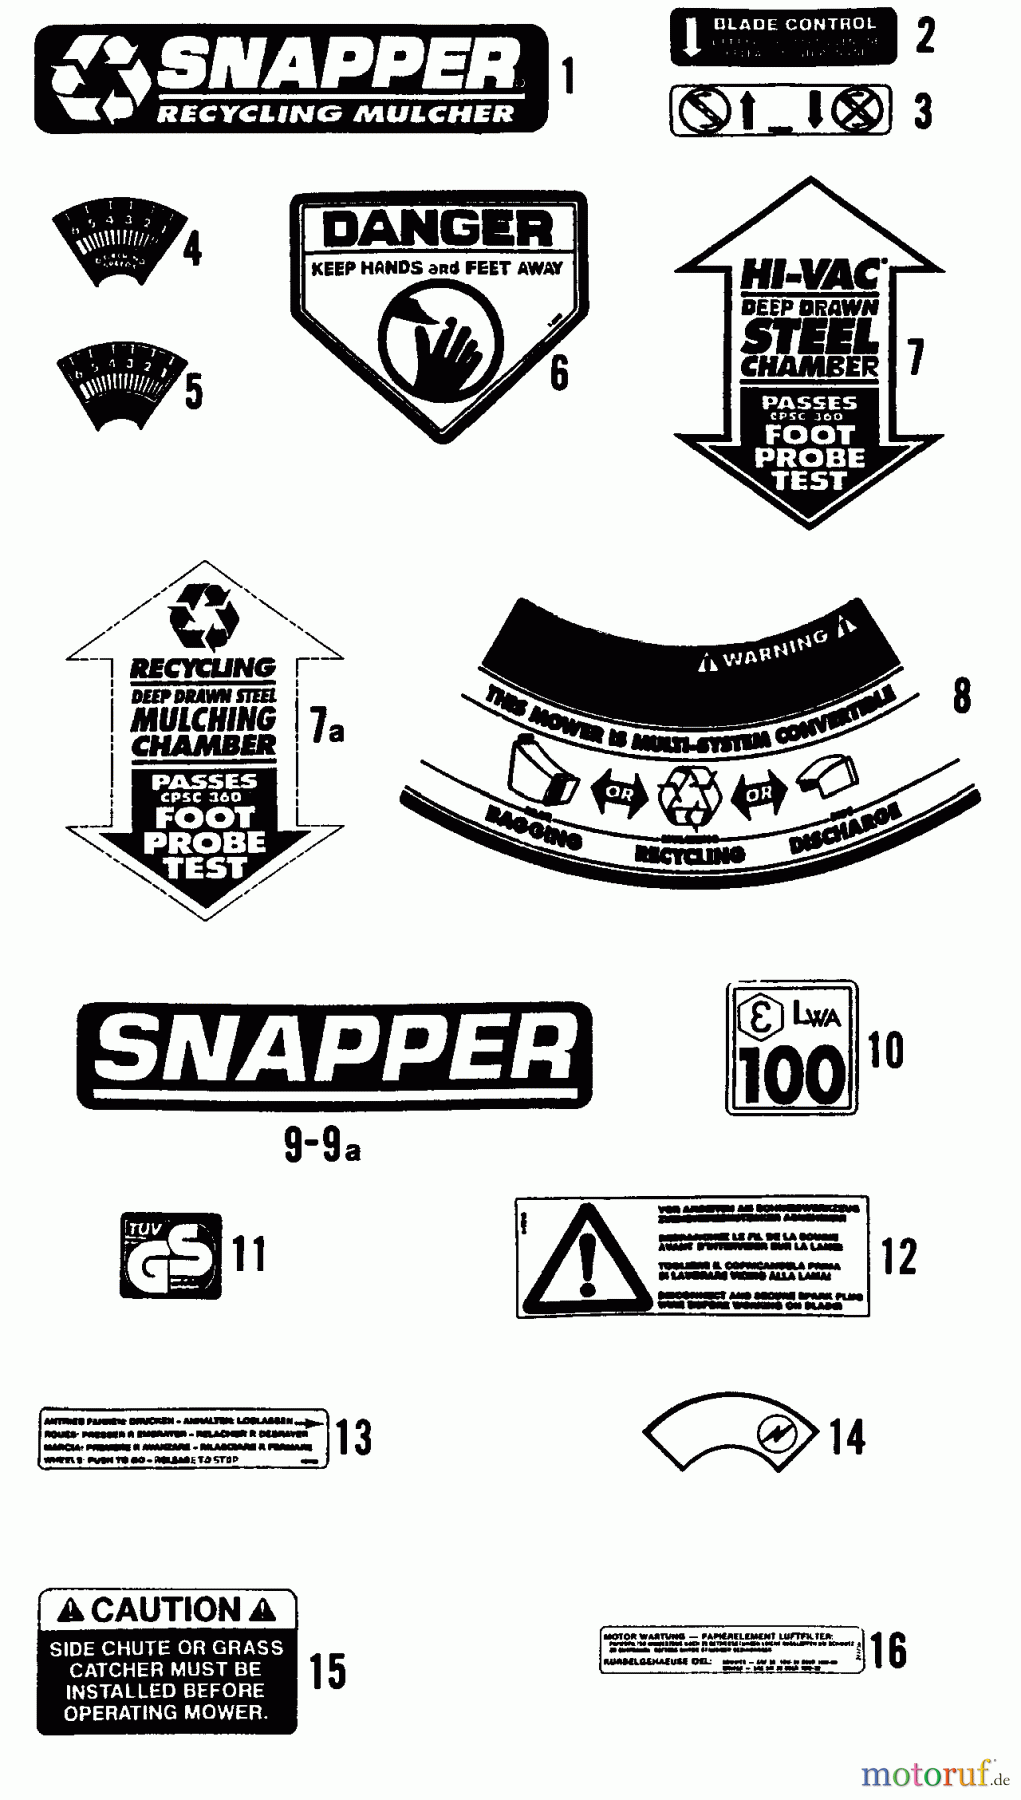  Snapper Rasenmäher P21509BE - Snapper 21